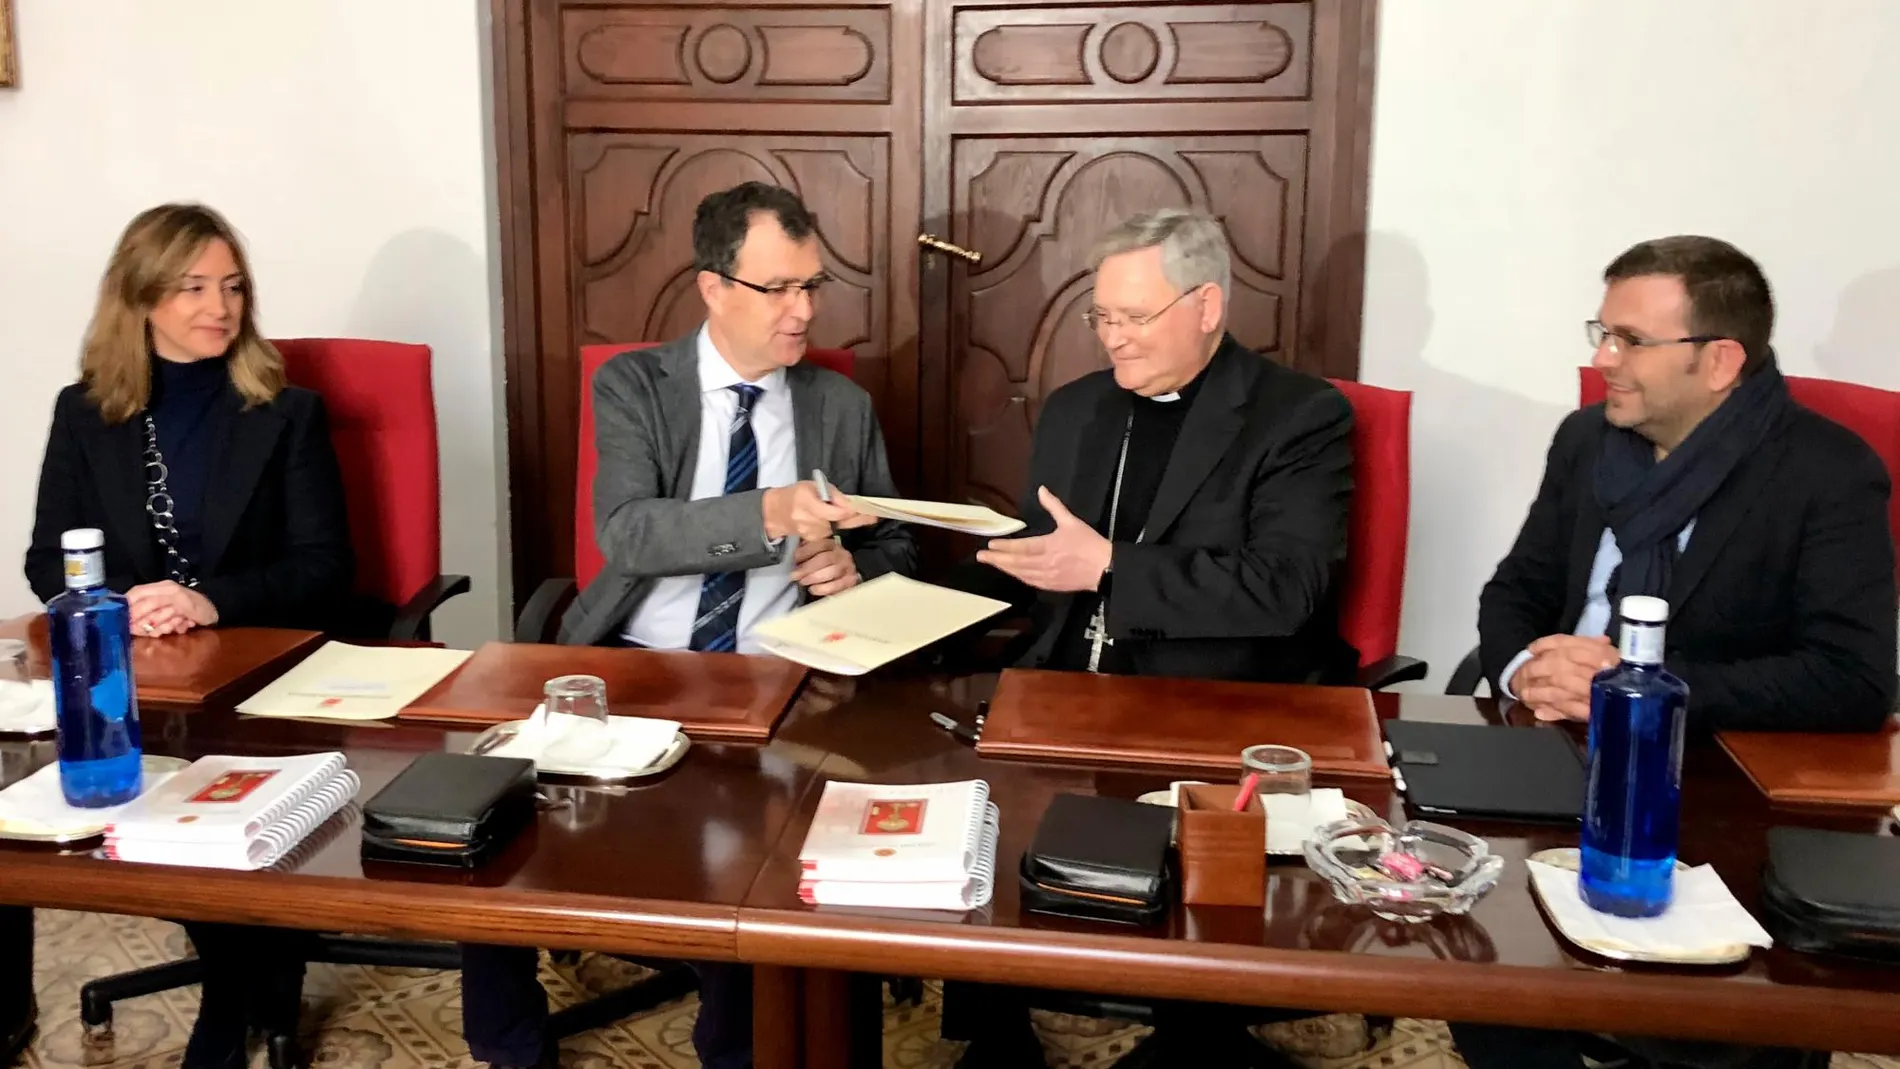 El alcalde de Murcia, José Ballesta, junto al obispo de la Diócesis de Cartagena, José Manuel Lorca Planes, durante la firma del convenio humanitario, ayer